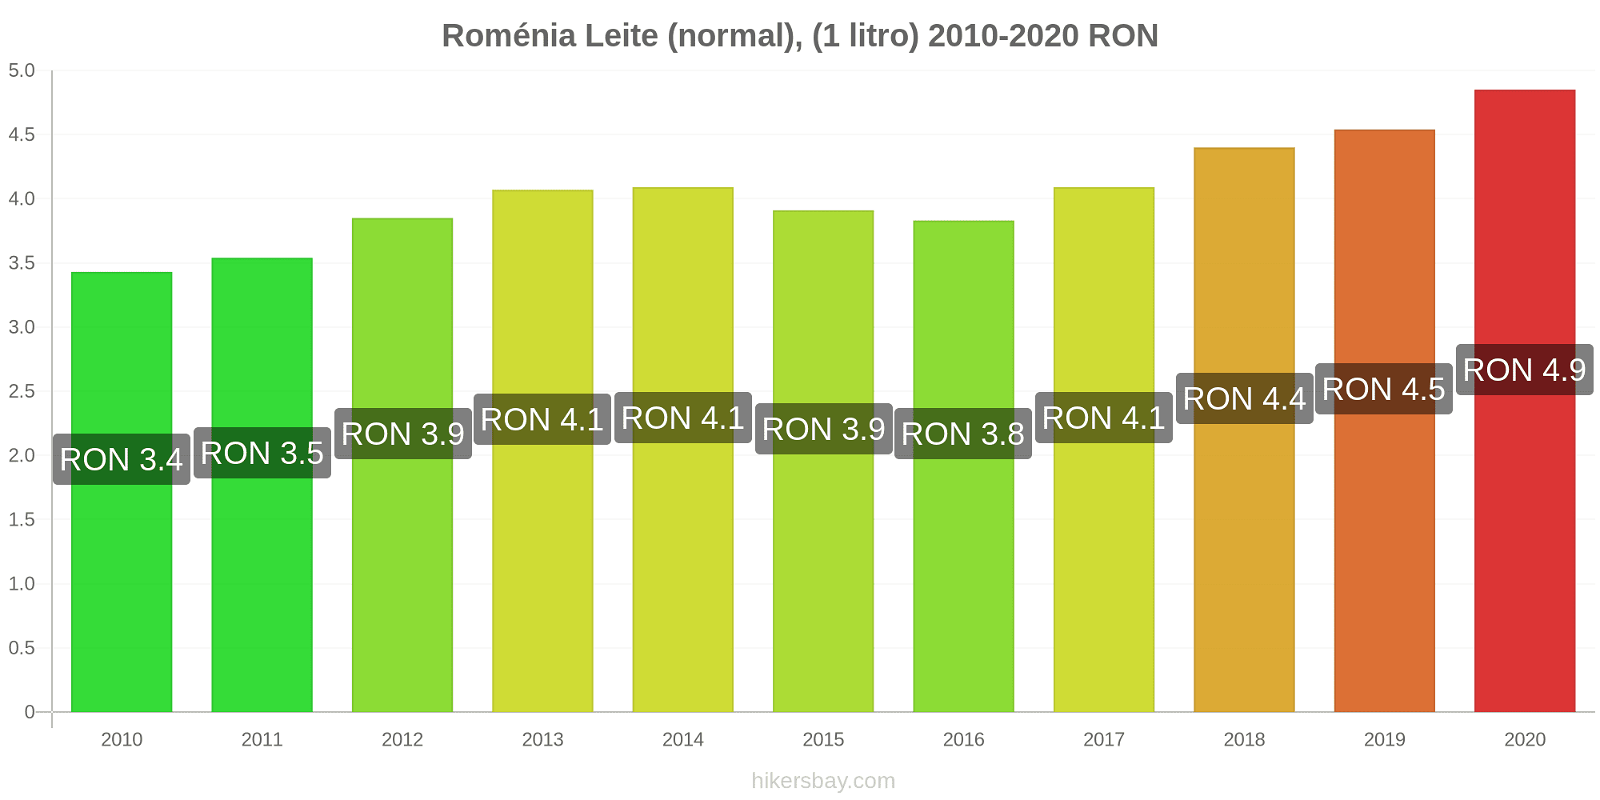 Roménia variação de preço (Regular), leite (1 litro) hikersbay.com